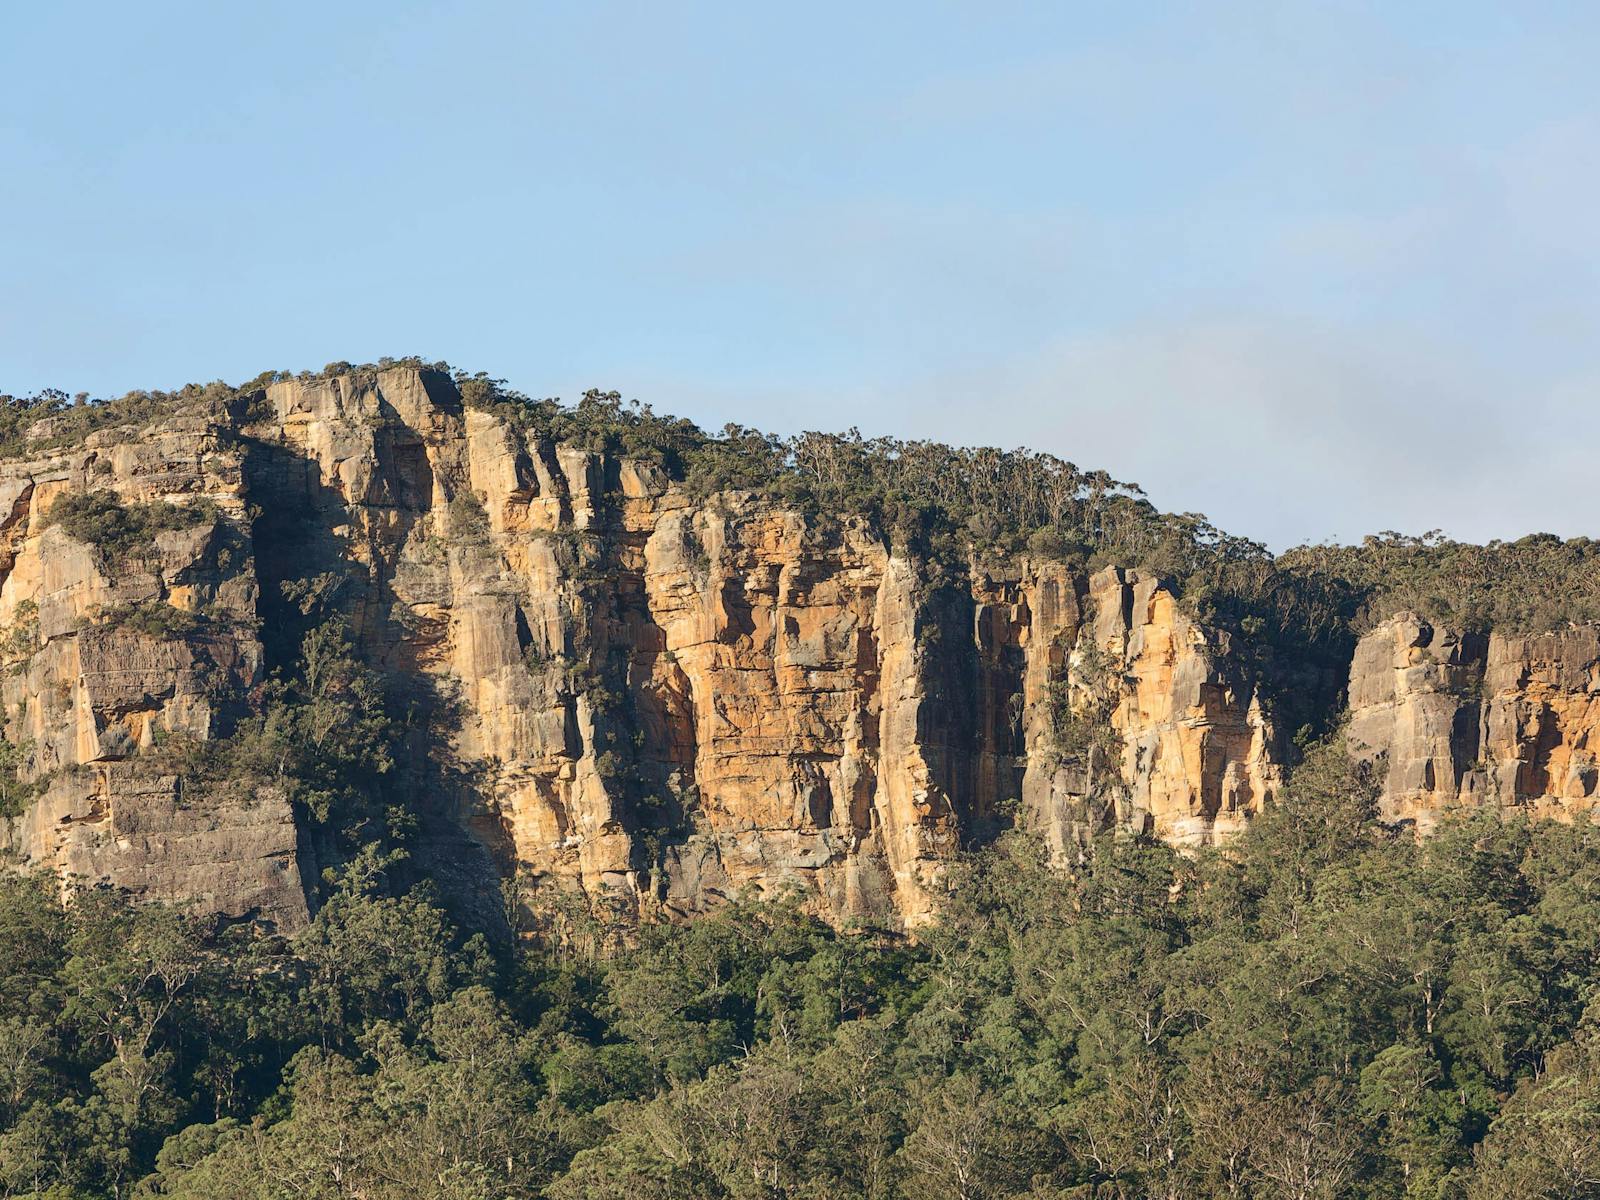 Barranca escarpment